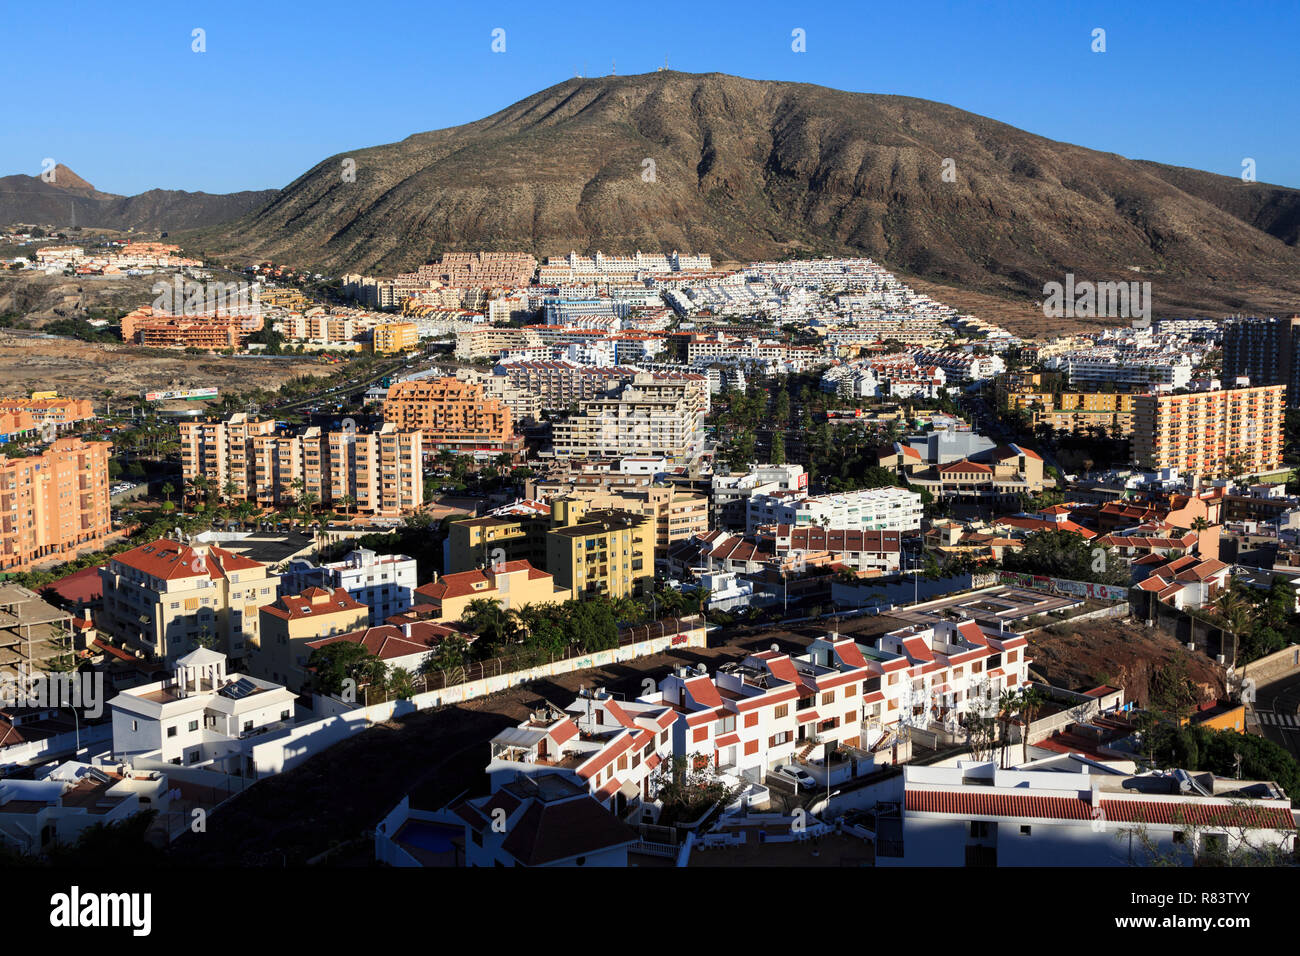 Los Cristianos , Playa de las Americas, Tenerife, Canary Island, une île espagnole, l'Espagne, au large de la côte nord de l'Afrique de l'ouest. Banque D'Images